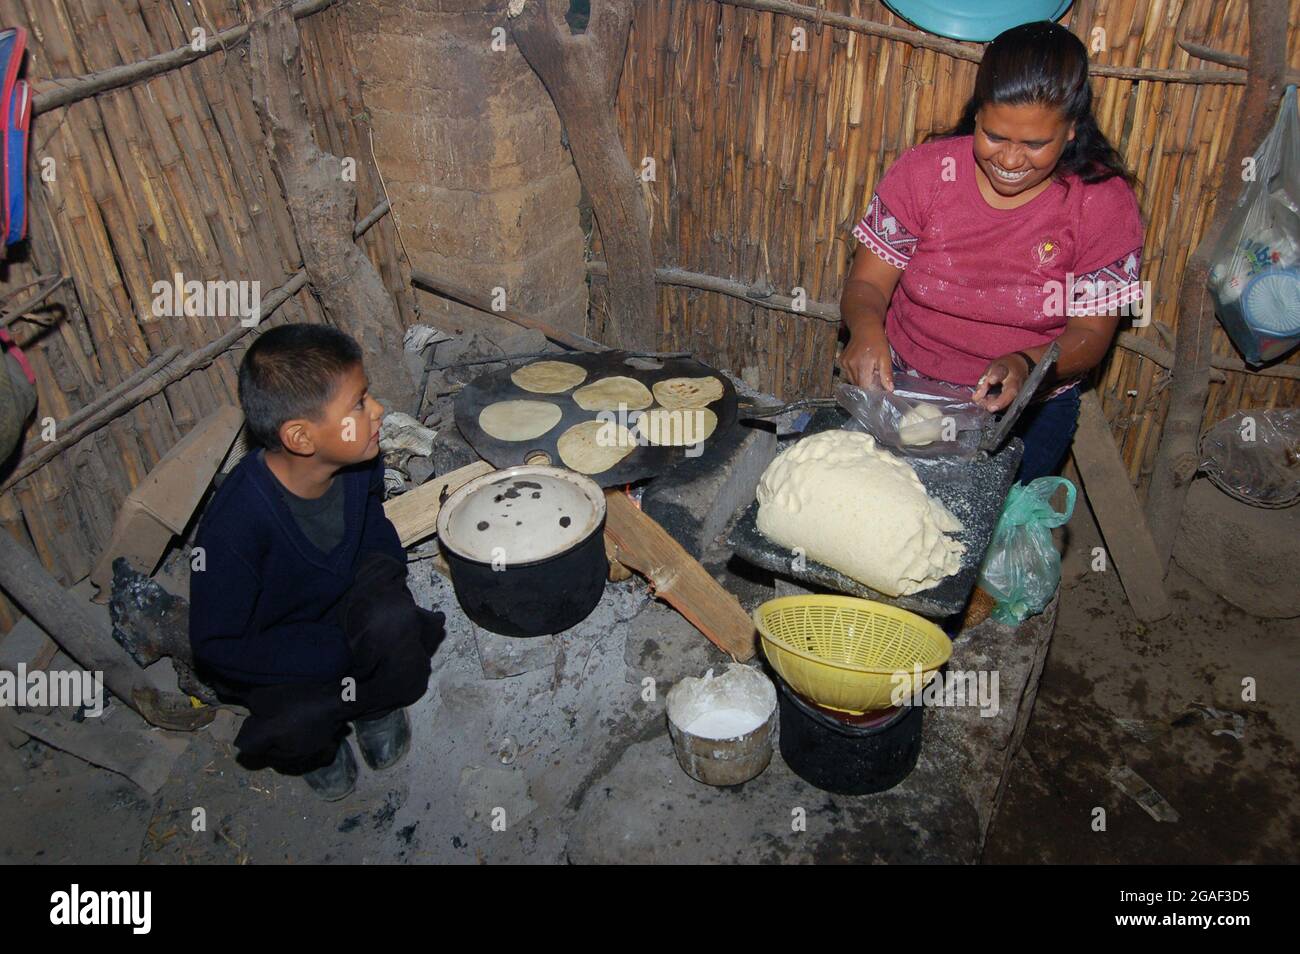 Eine Mutter bereitet masa - Maismehl - zu, das sie zur Herstellung von Tortillas verwenden wird. Stockfoto